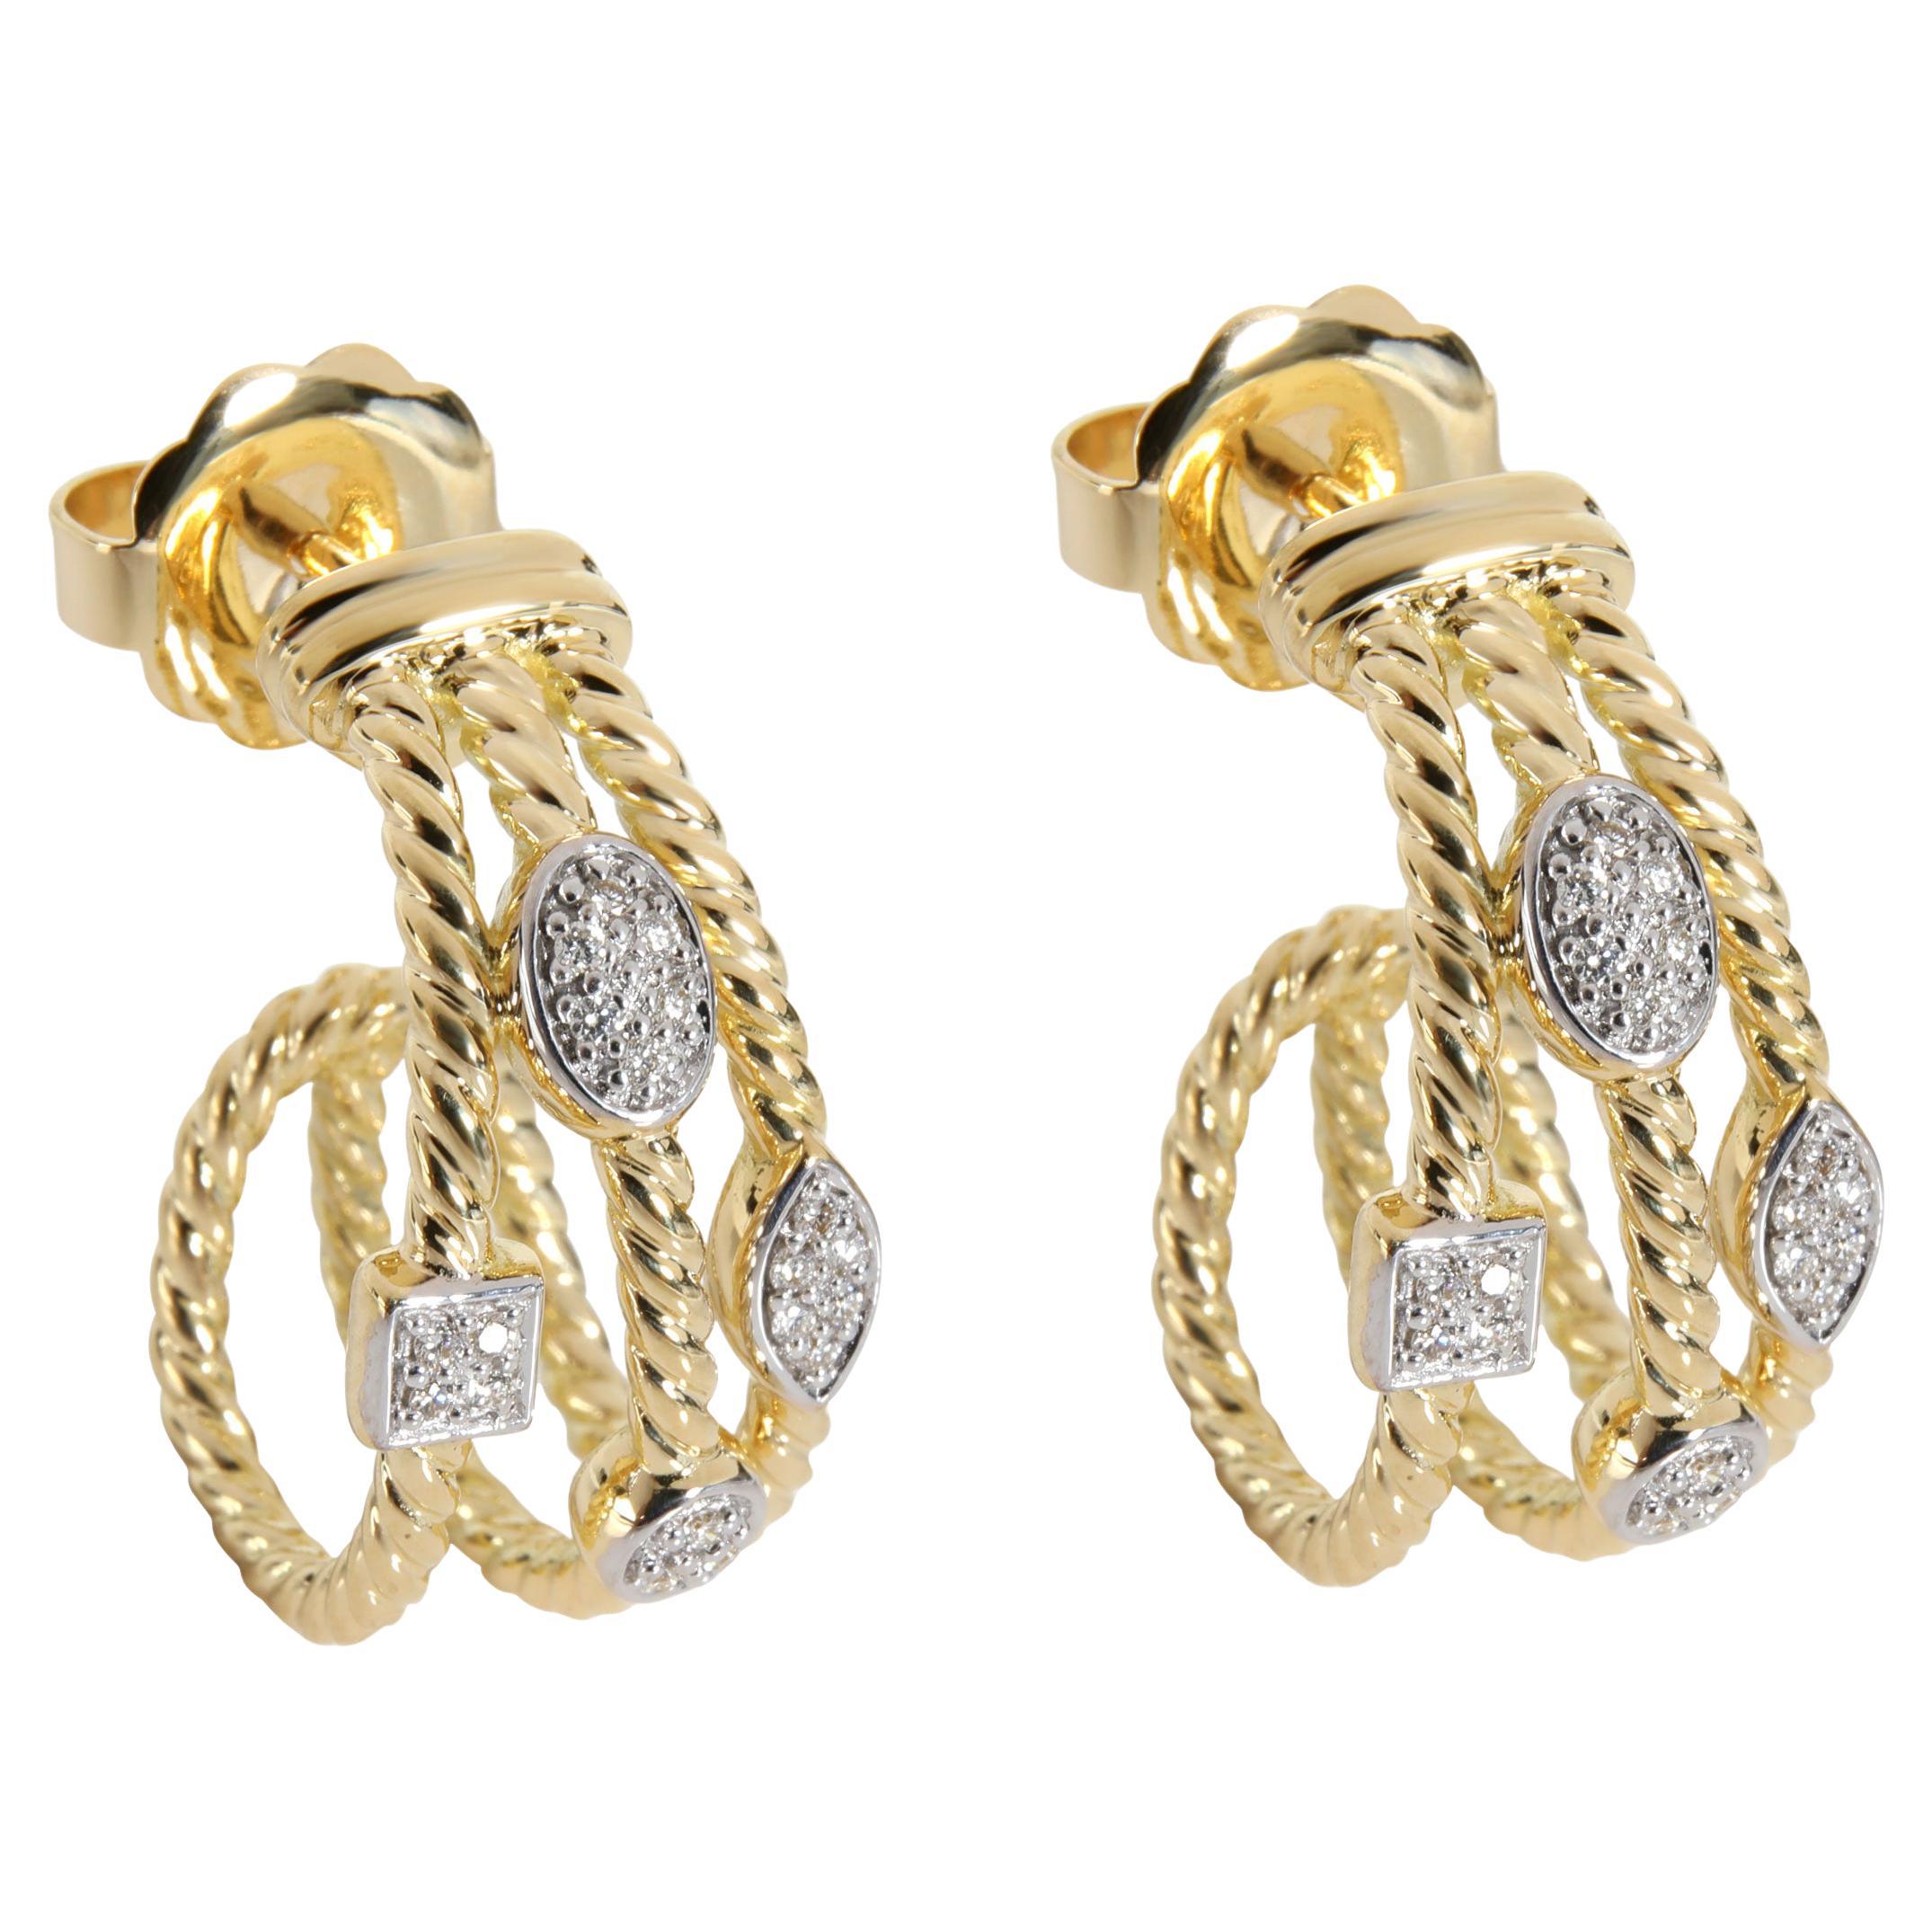 David Yurman Confetti Diamond Earring in 18K Yellow Gold 0.15 CTW